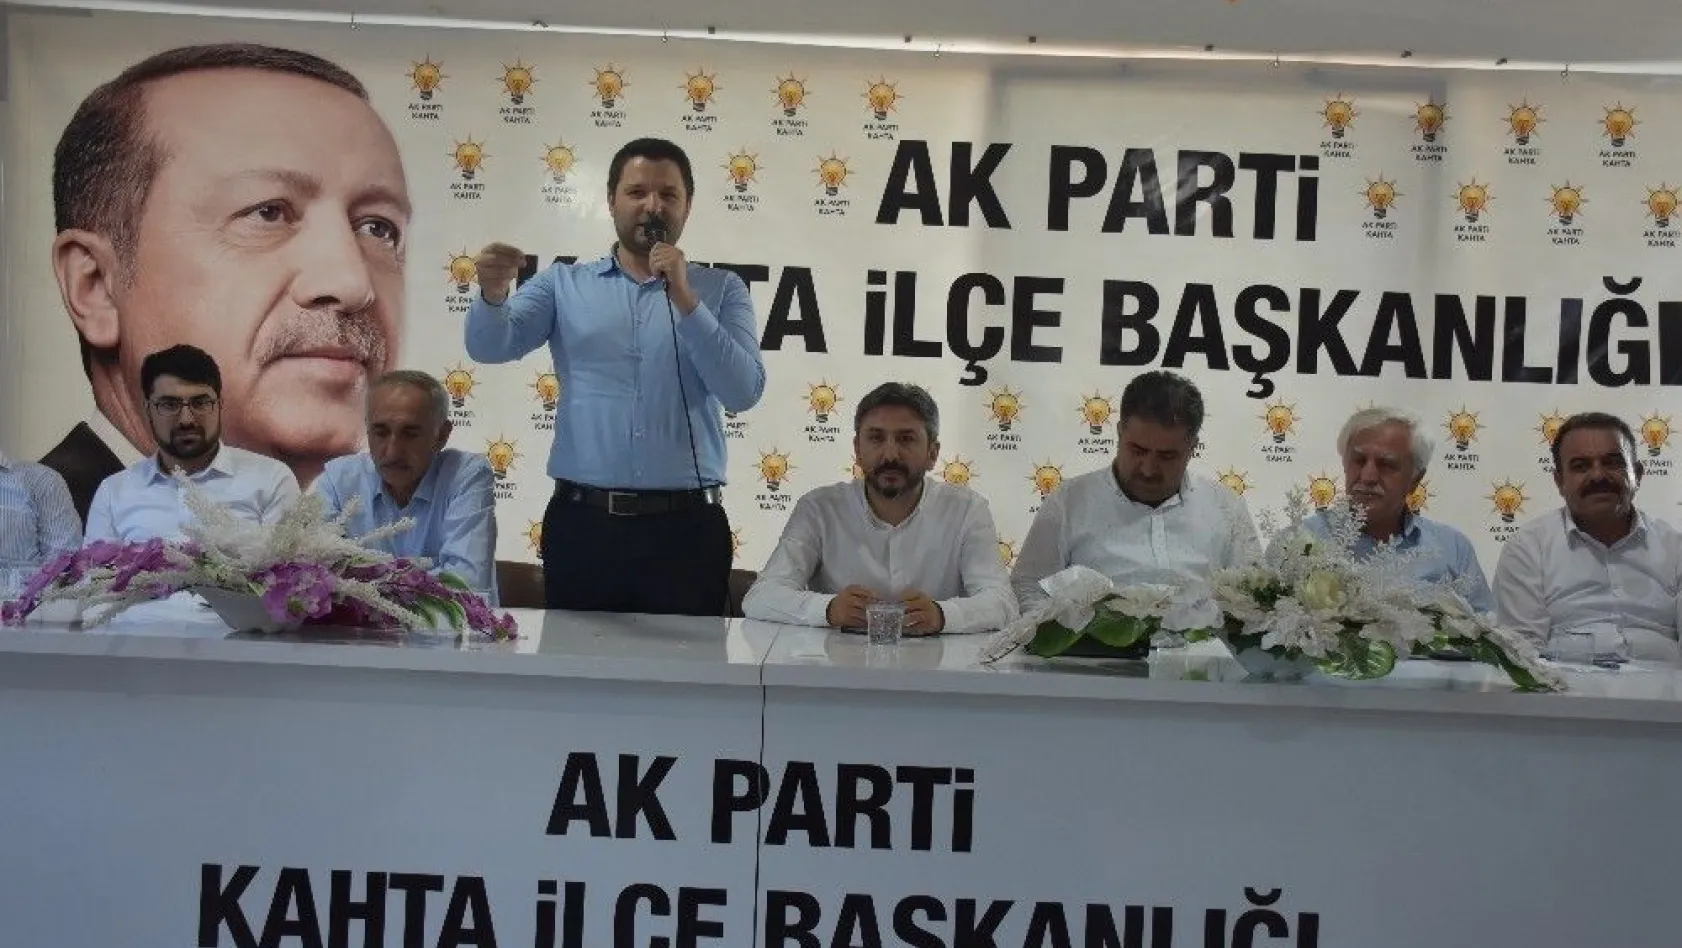 AK Partili milletvekillerinden ilçe teşkilatına teşekkür
